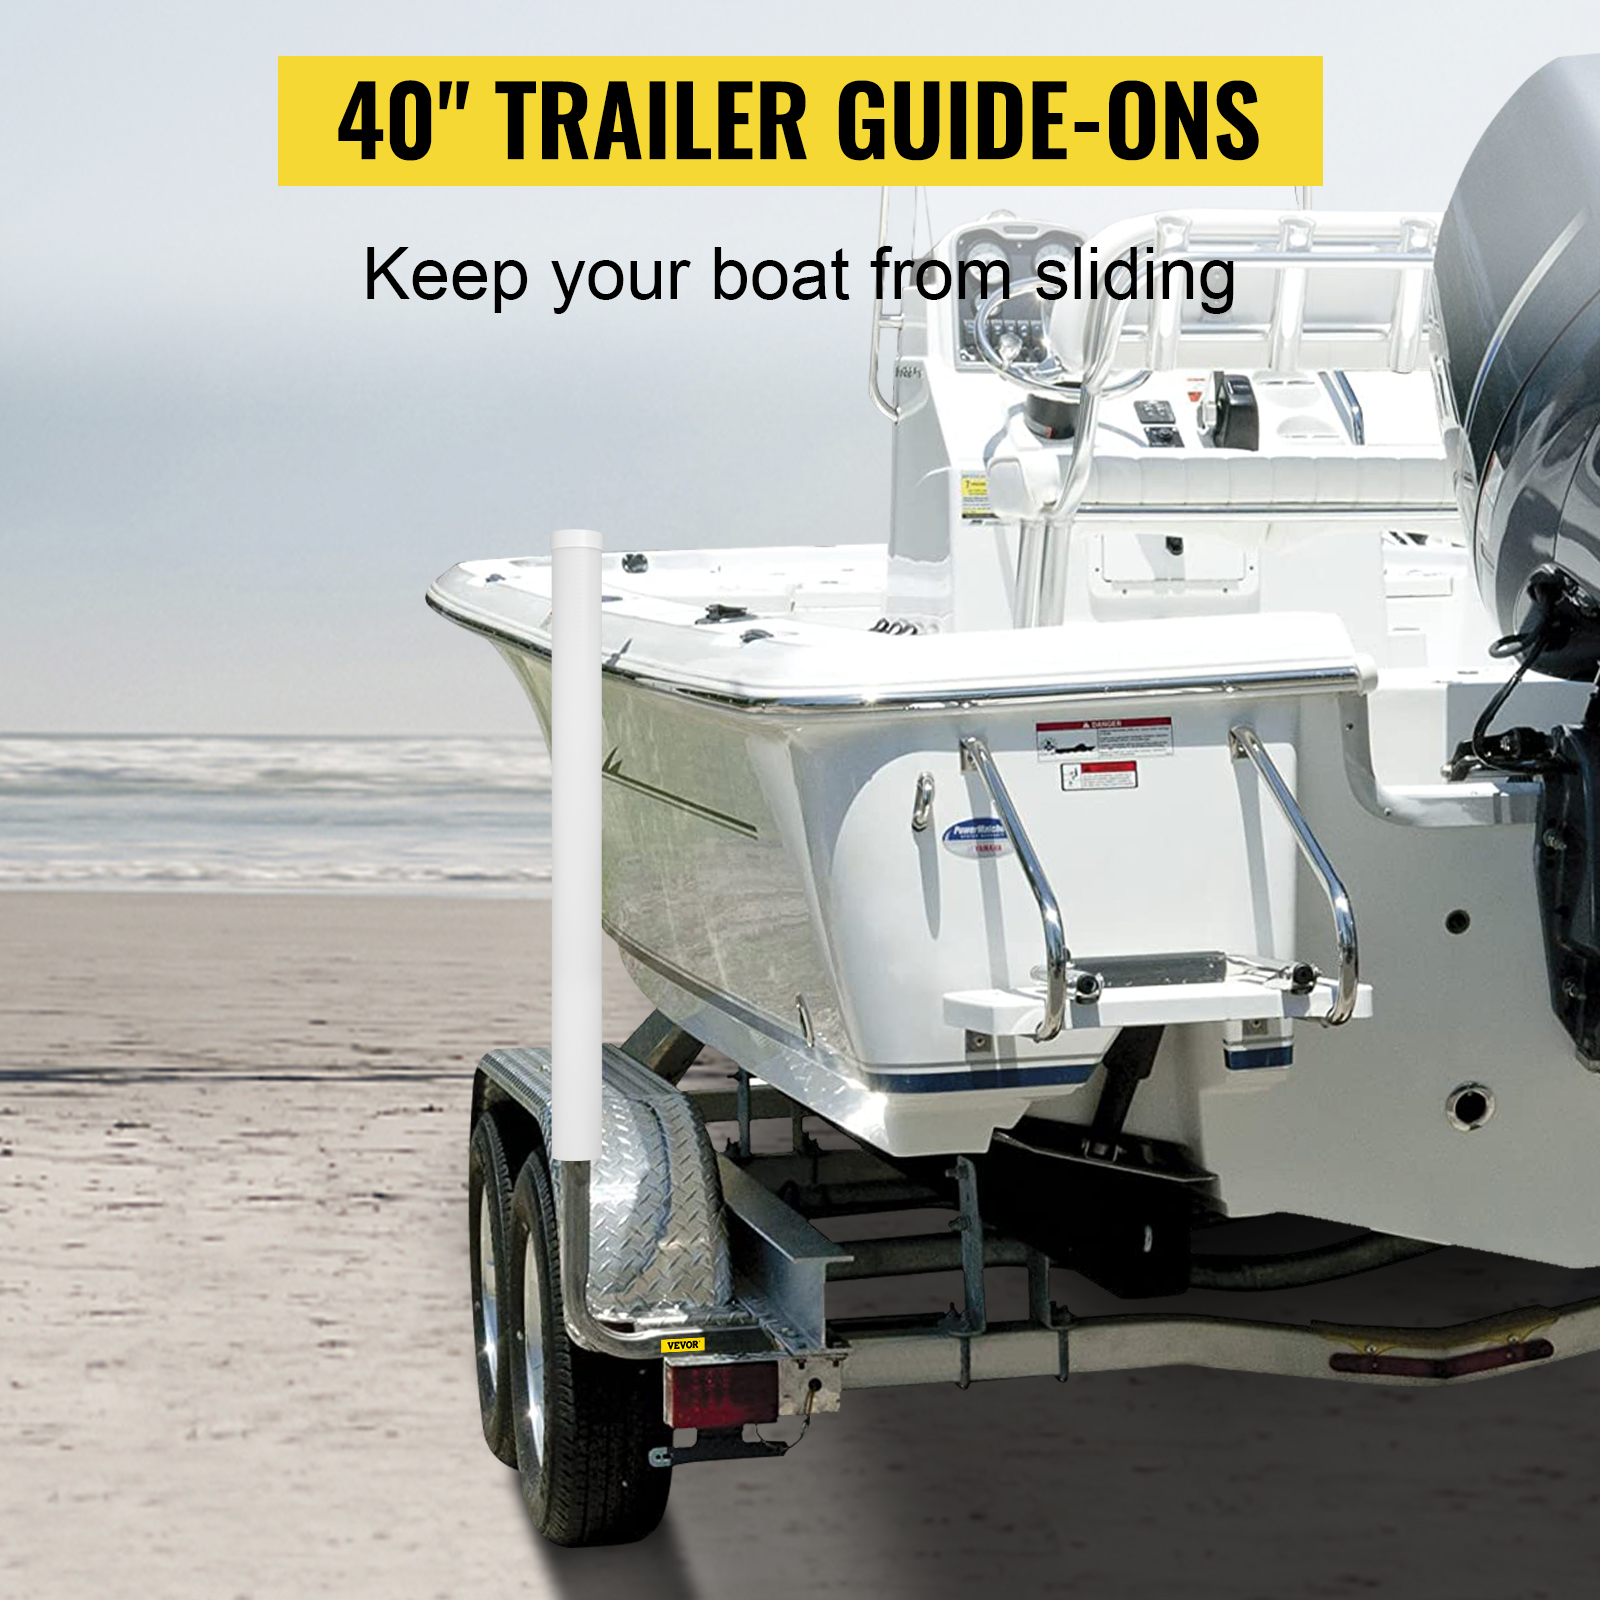 VEVOR VEVOR Boat Trailer Guide-ons, 40